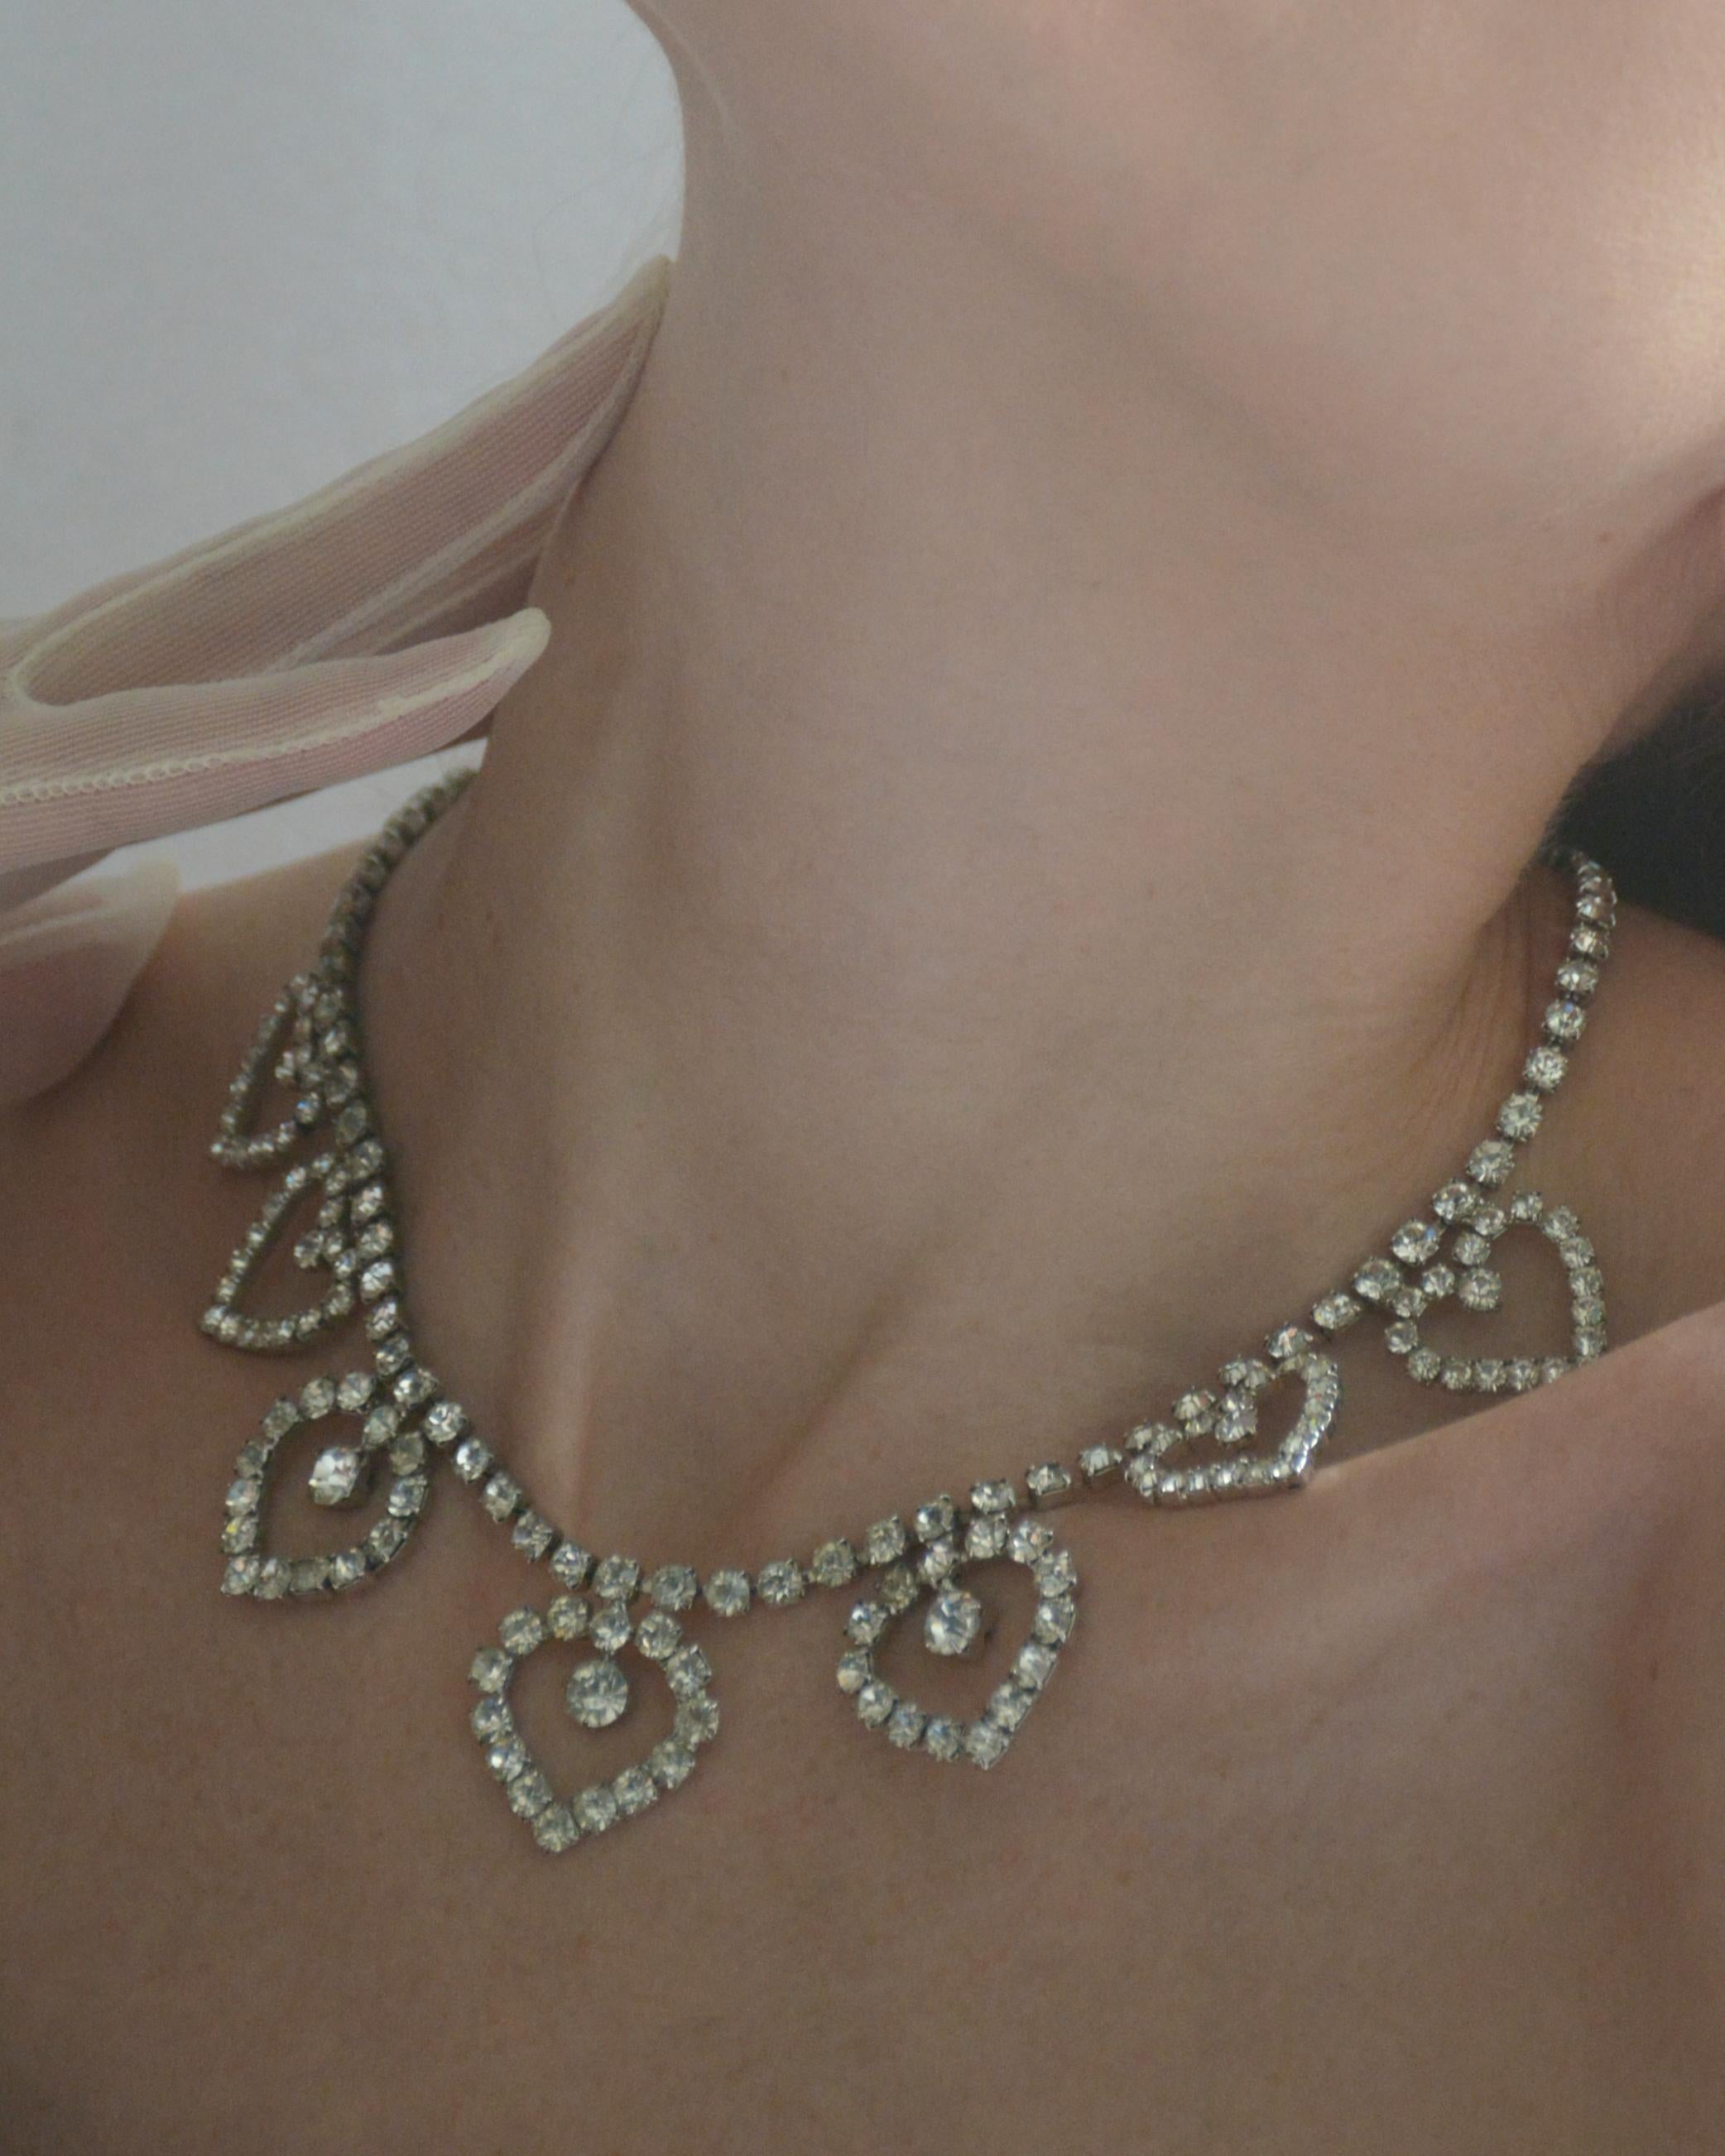 Diese Halskette mit Diamanten aus den 1950er-Jahren besteht aus Herz-Tropfen, wobei drei größere Herzen die Mitte bilden. Diese diamantbesetzten Herzmotive aus den 1950er Jahren werden heute von Designern wie Saint Laurent und Alessandra Rich immer